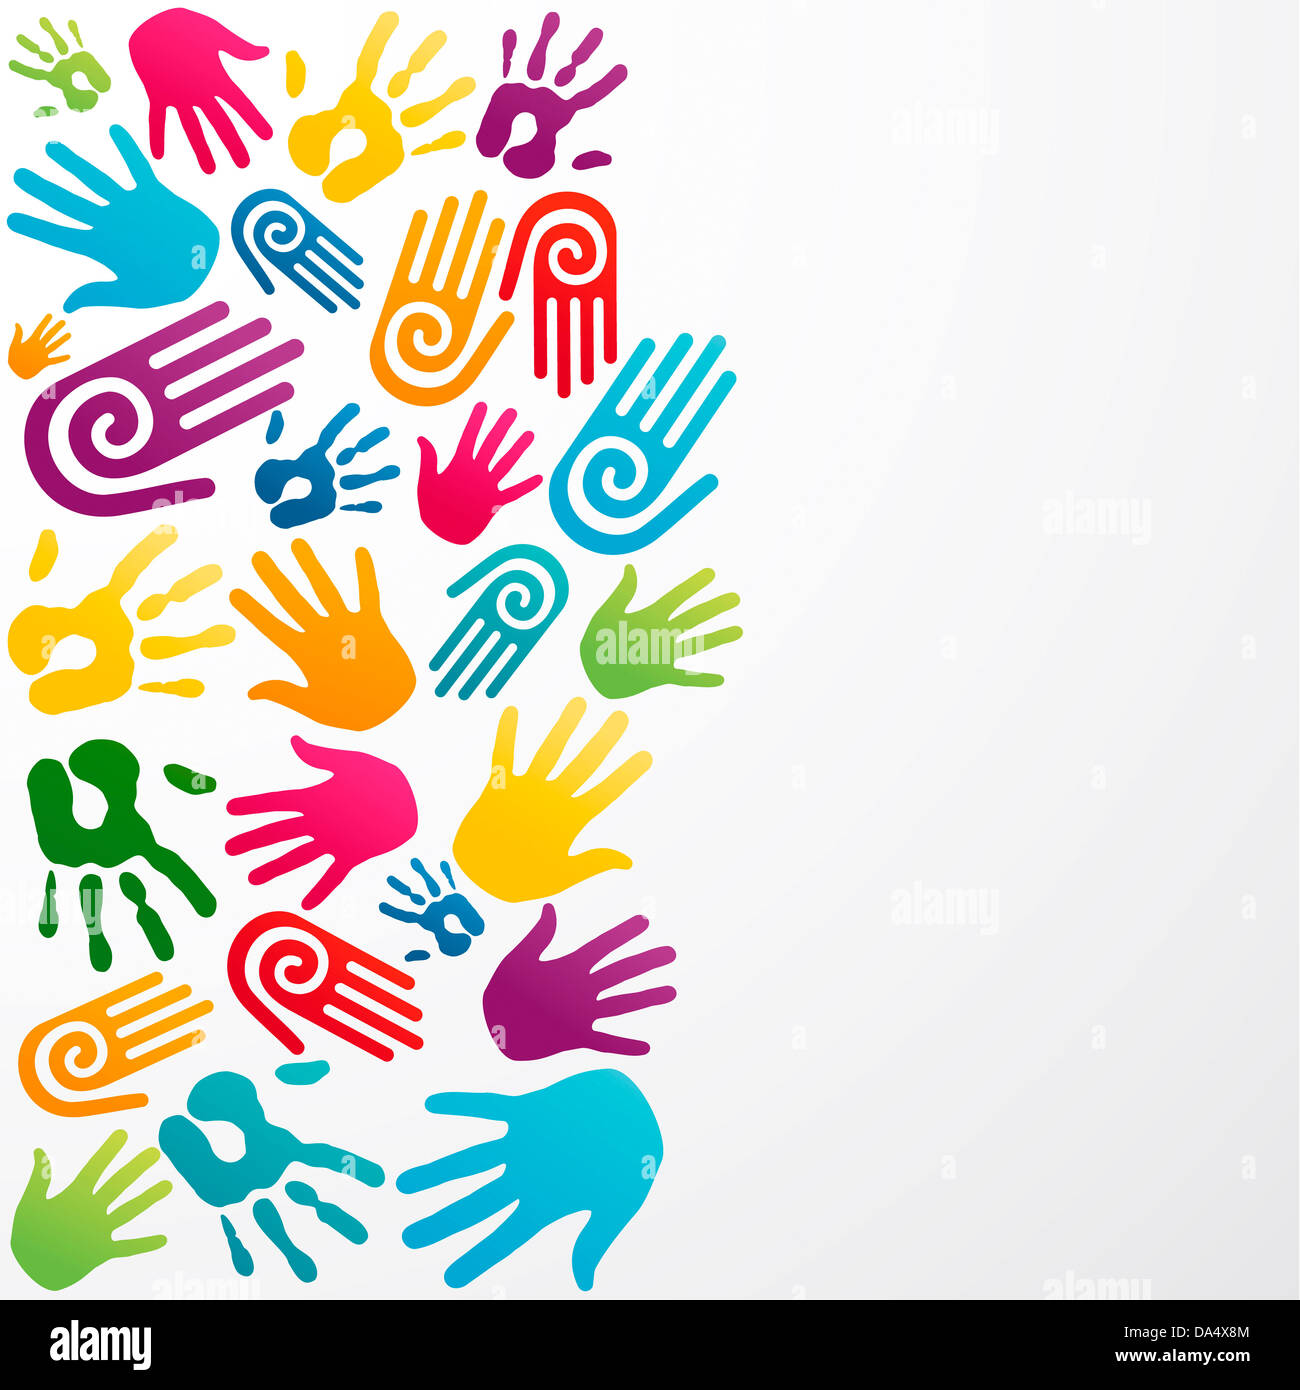 Farbenfrohe Silhouette Hand Gruppe Hintergrund. Vektor-Illustration für einfache Handhabung und individuelle Färbung geschichtet. Stockfoto